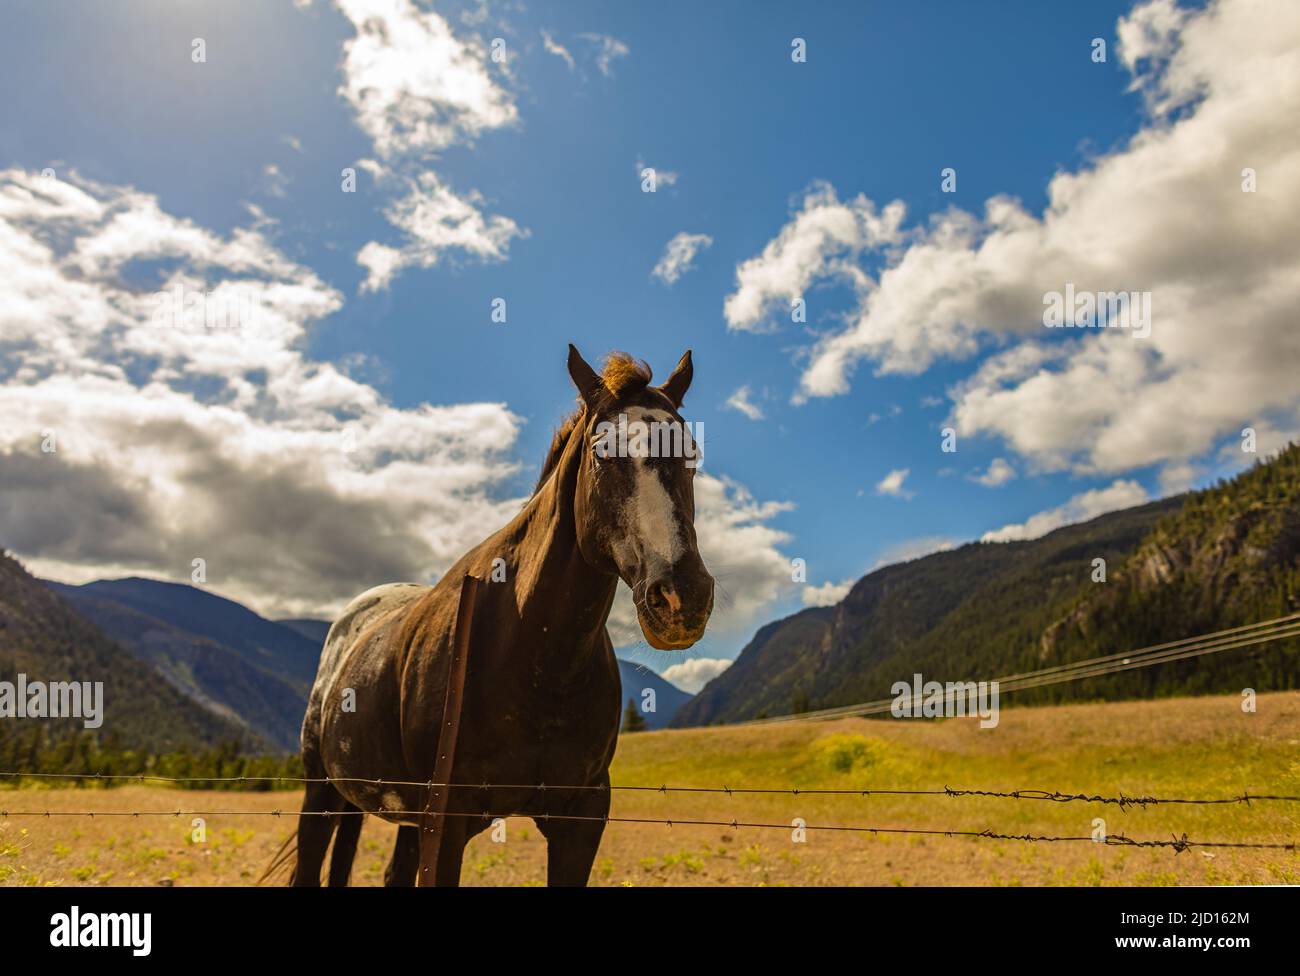 Wildpferd auf dem Bergfeld gegen blauen Himmel. Wildes Pferd in Ruhe. Selektiver Fokus, niemand, Platz für Text kopieren Stockfoto